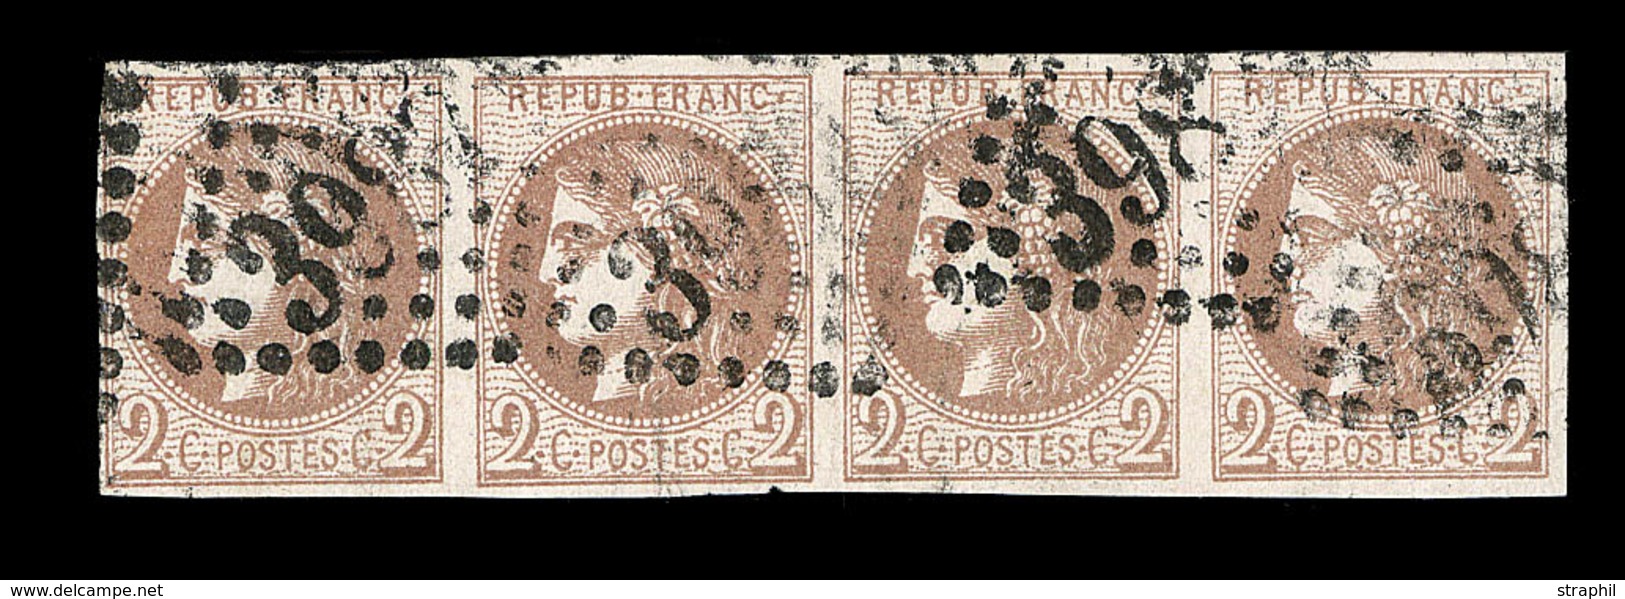 O EMISSION DE BORDEAUX  - O - N°40Bc - 2c Chocolat Foncé - Bde De 4 - Obl. GC 3987 - Petite Froissure Sans Importance -  - 1870 Bordeaux Printing